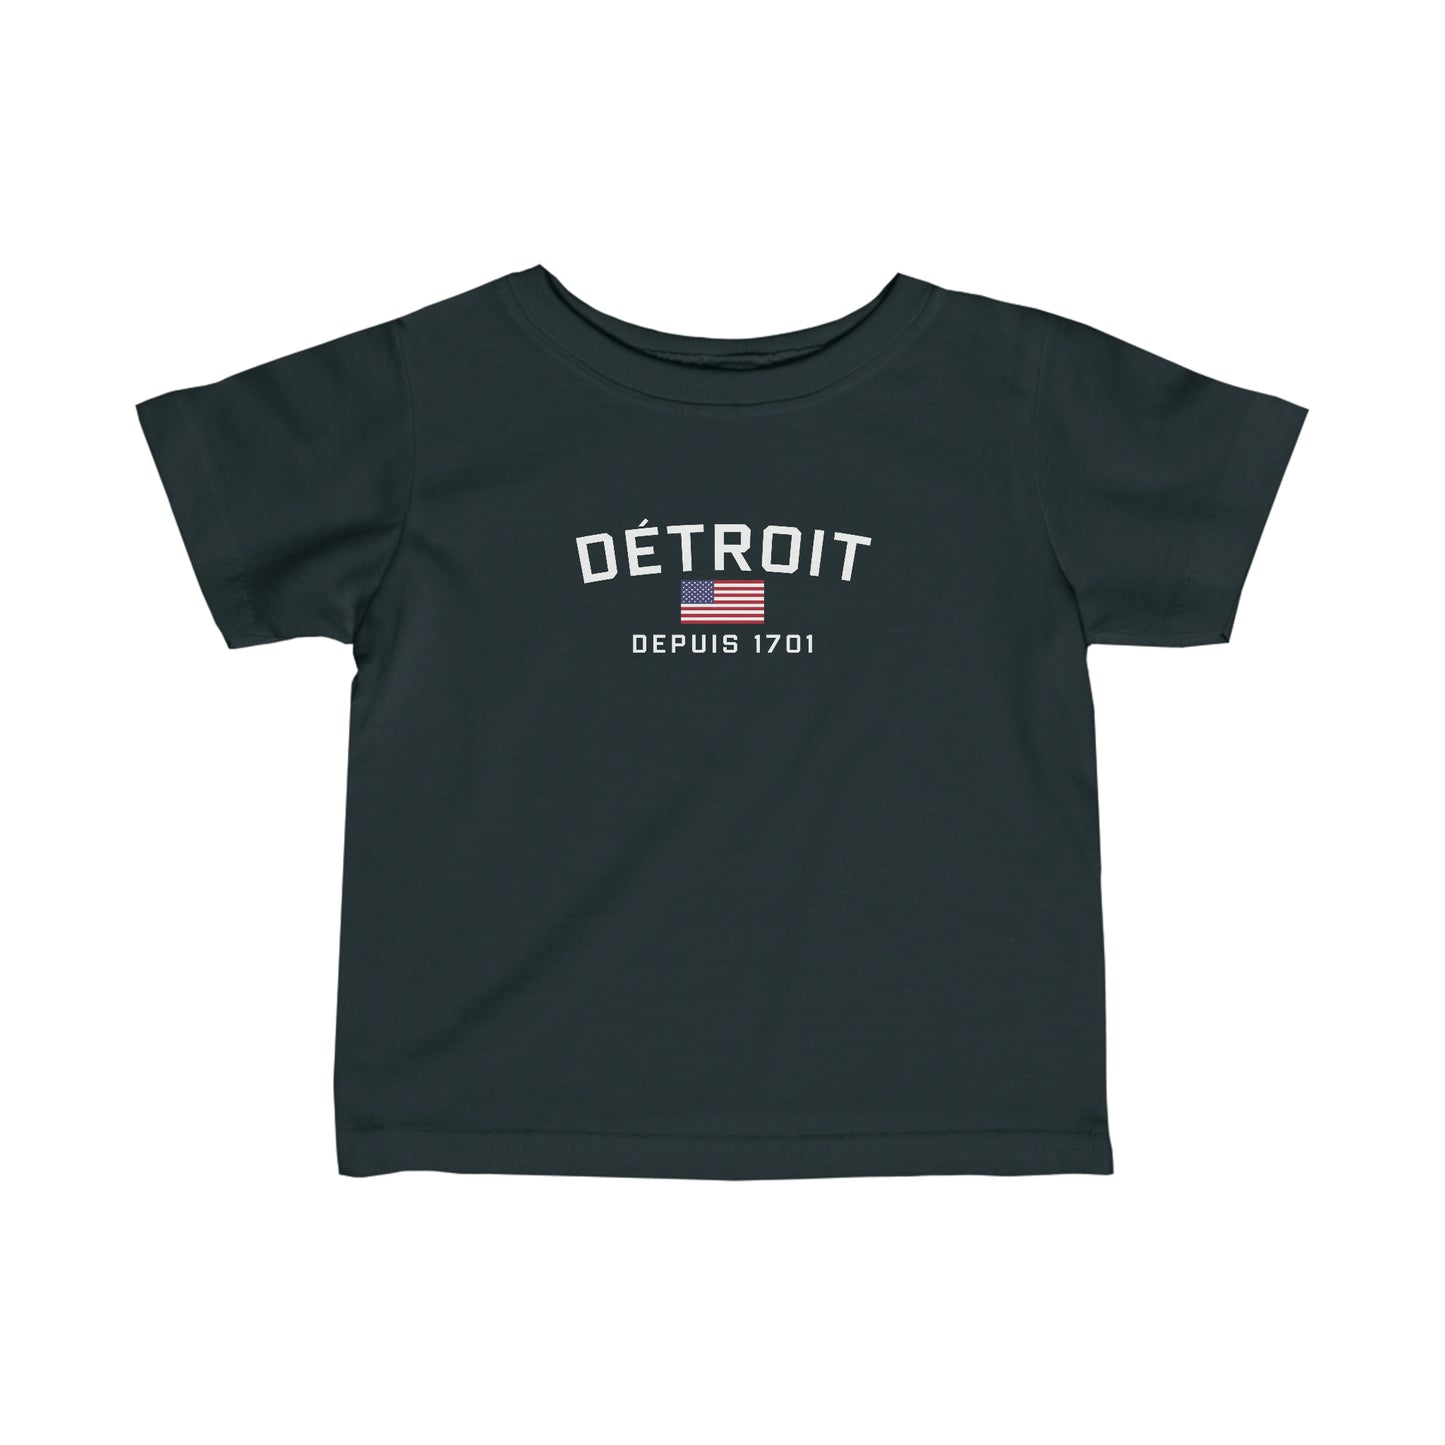 'Détroit Depuis 1701' T-Shirt (w/USA Flag Outline) |  Infant Short Sleeve